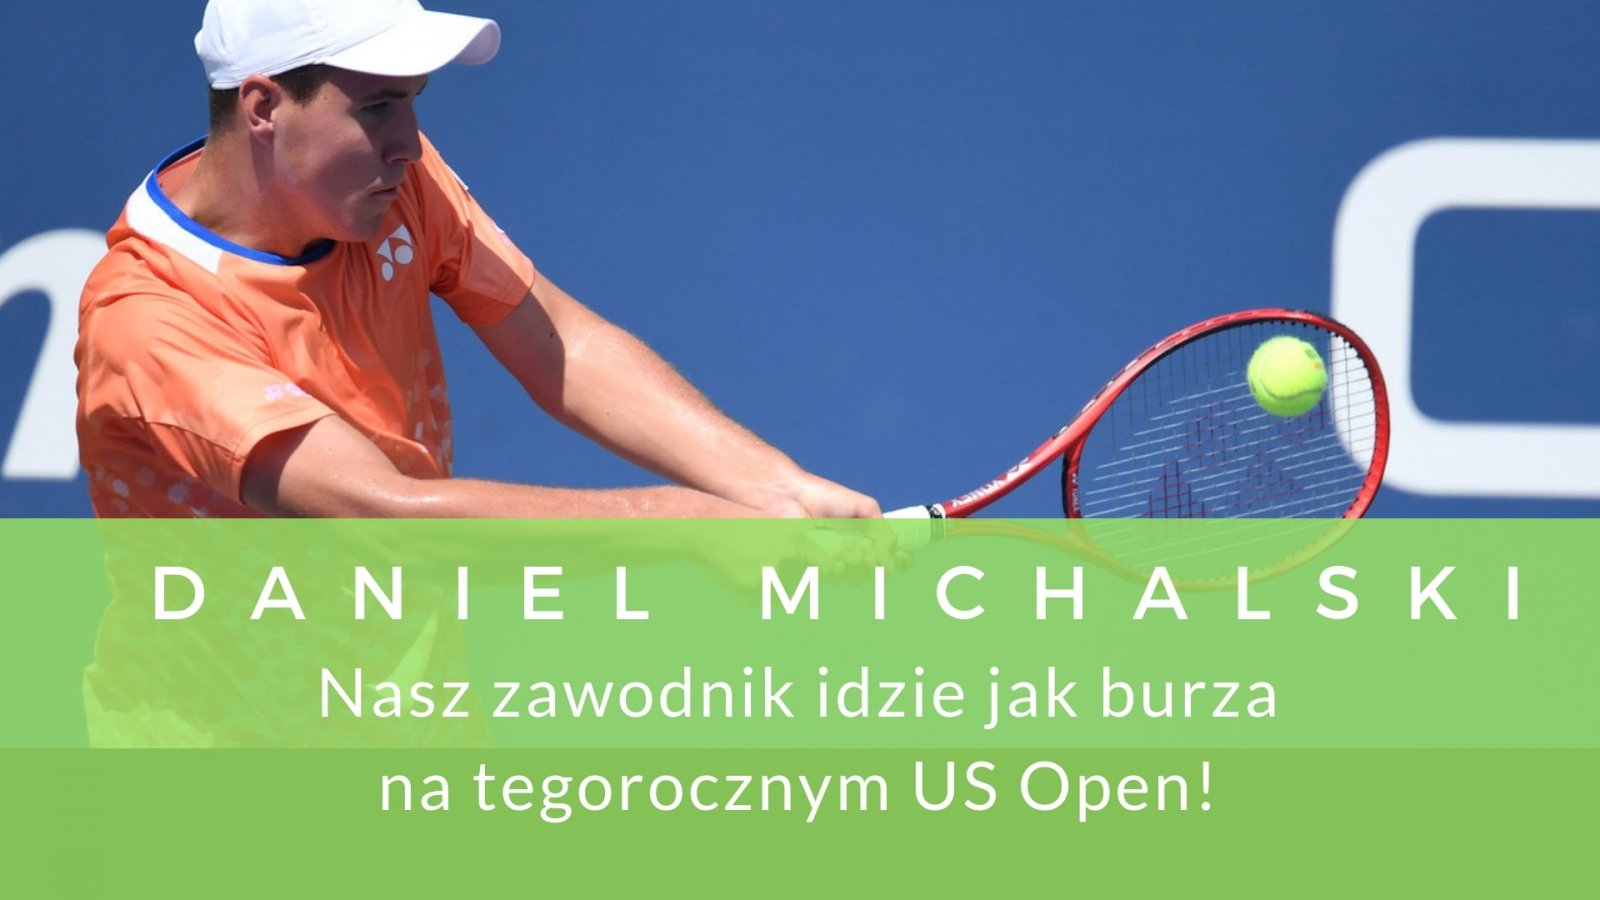 Daniel Michalski idzie jak burza na tegorocznym US Open!